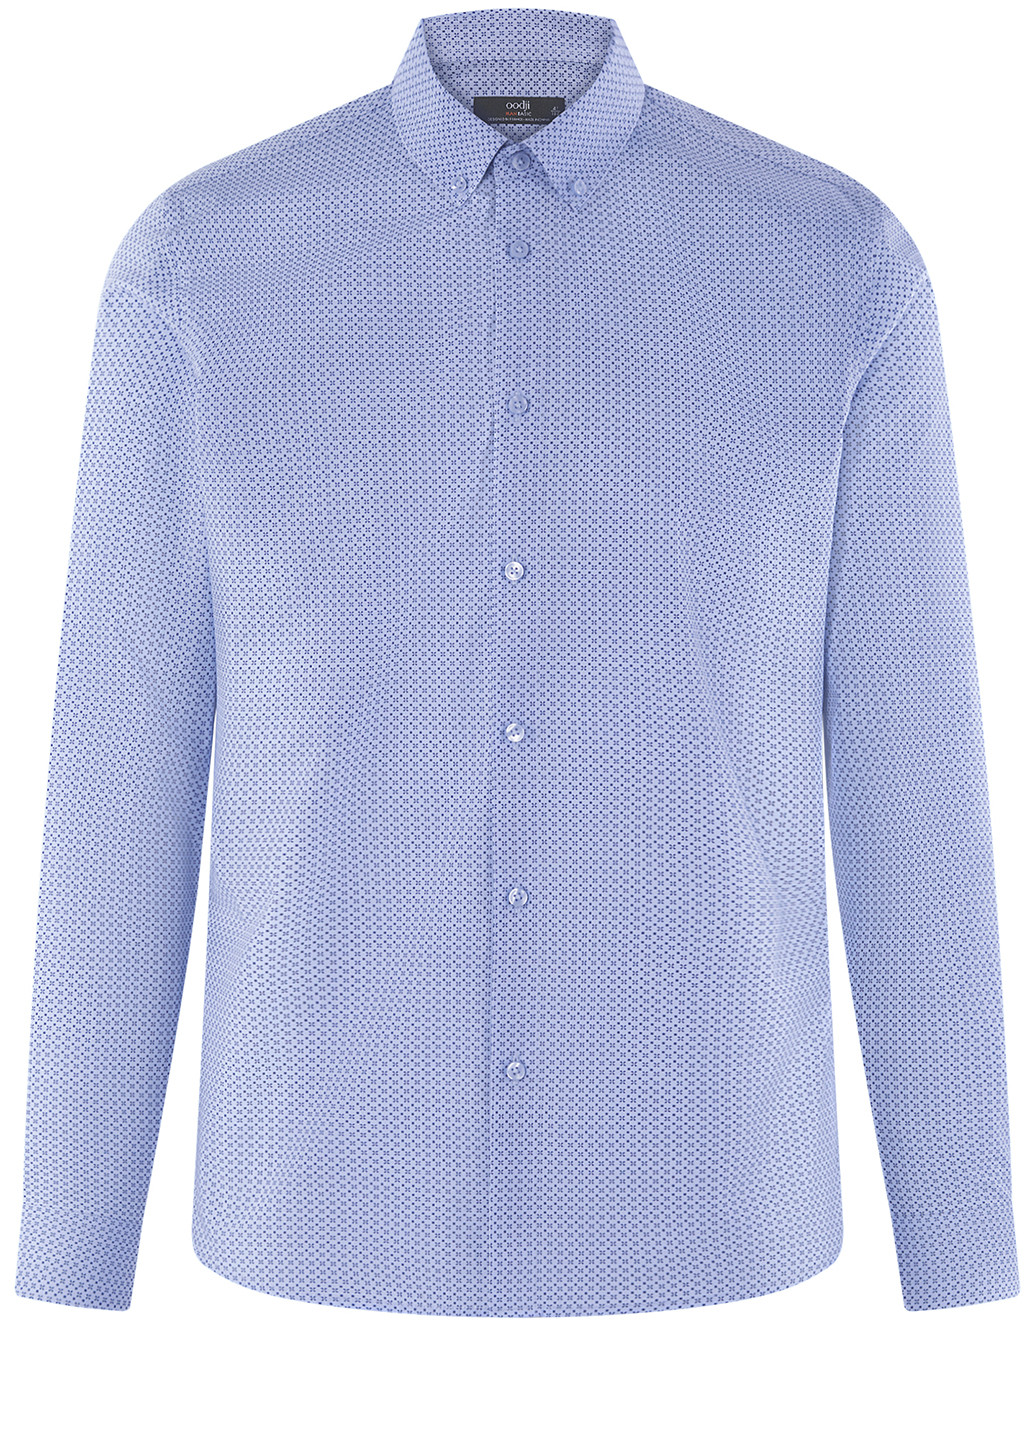 Синяя классическая рубашка с геометрическим узором Oodji